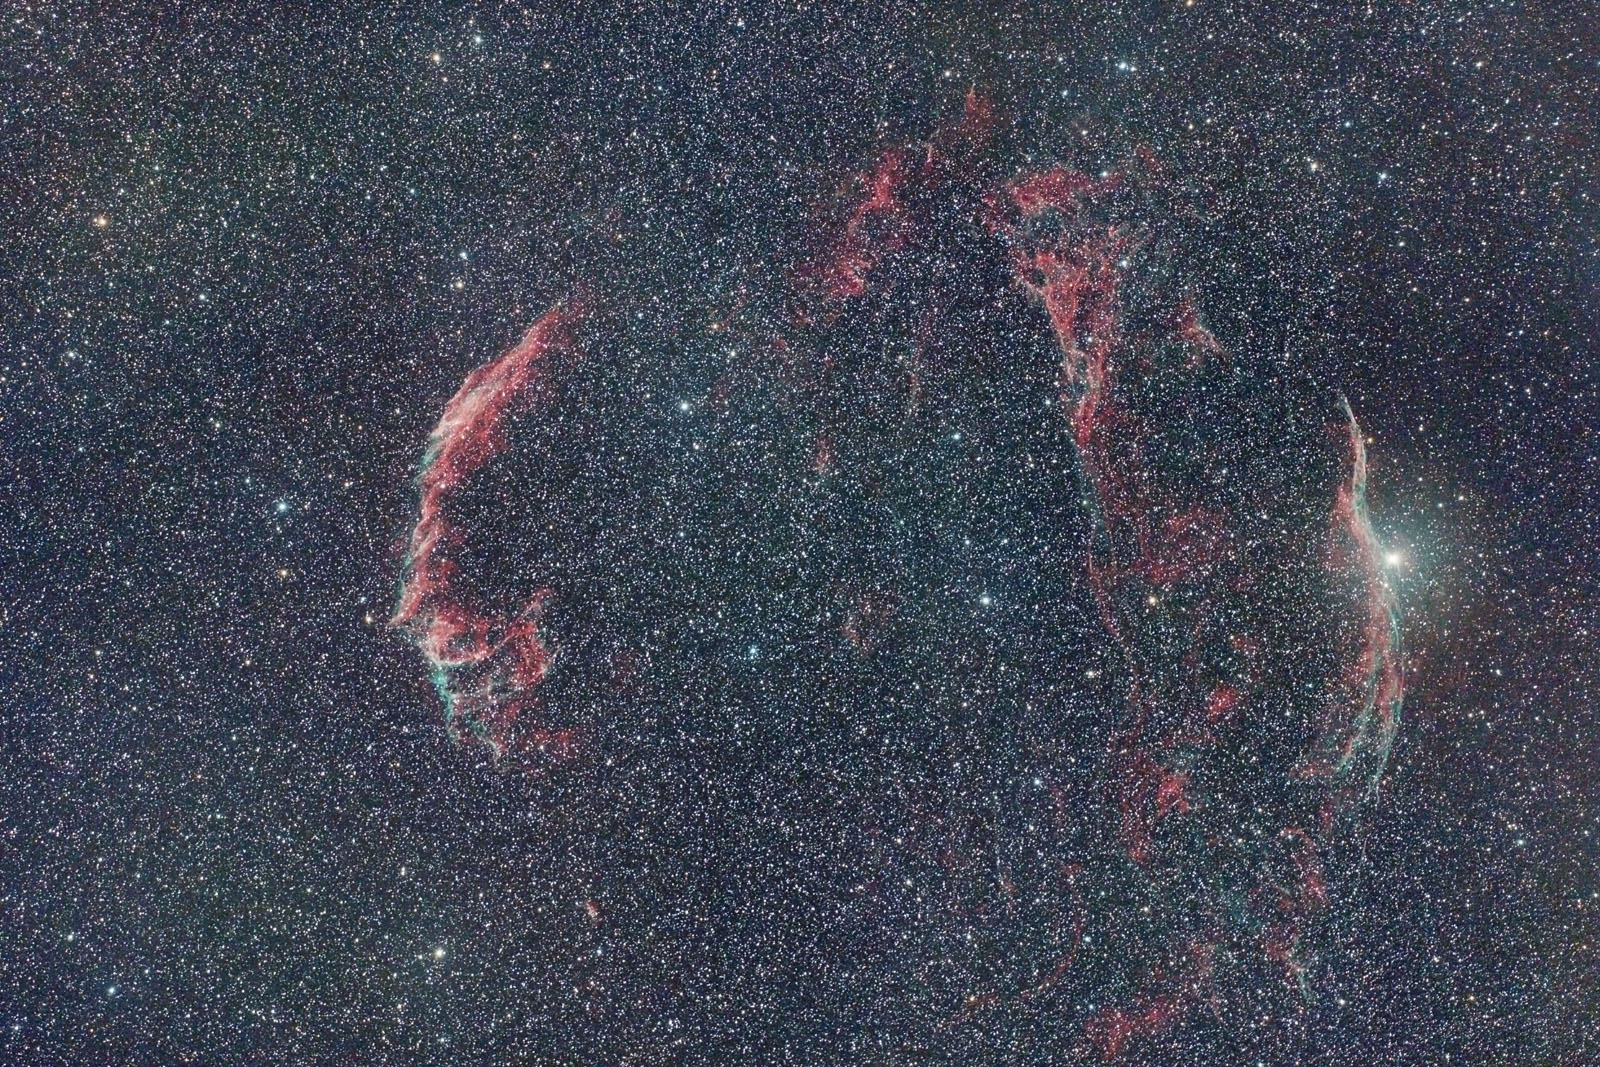 2015-6-20_Veil Nebula 105-650 7704 D1 5DII 24x3mins ISO1600 multiple framing  C2.jpg